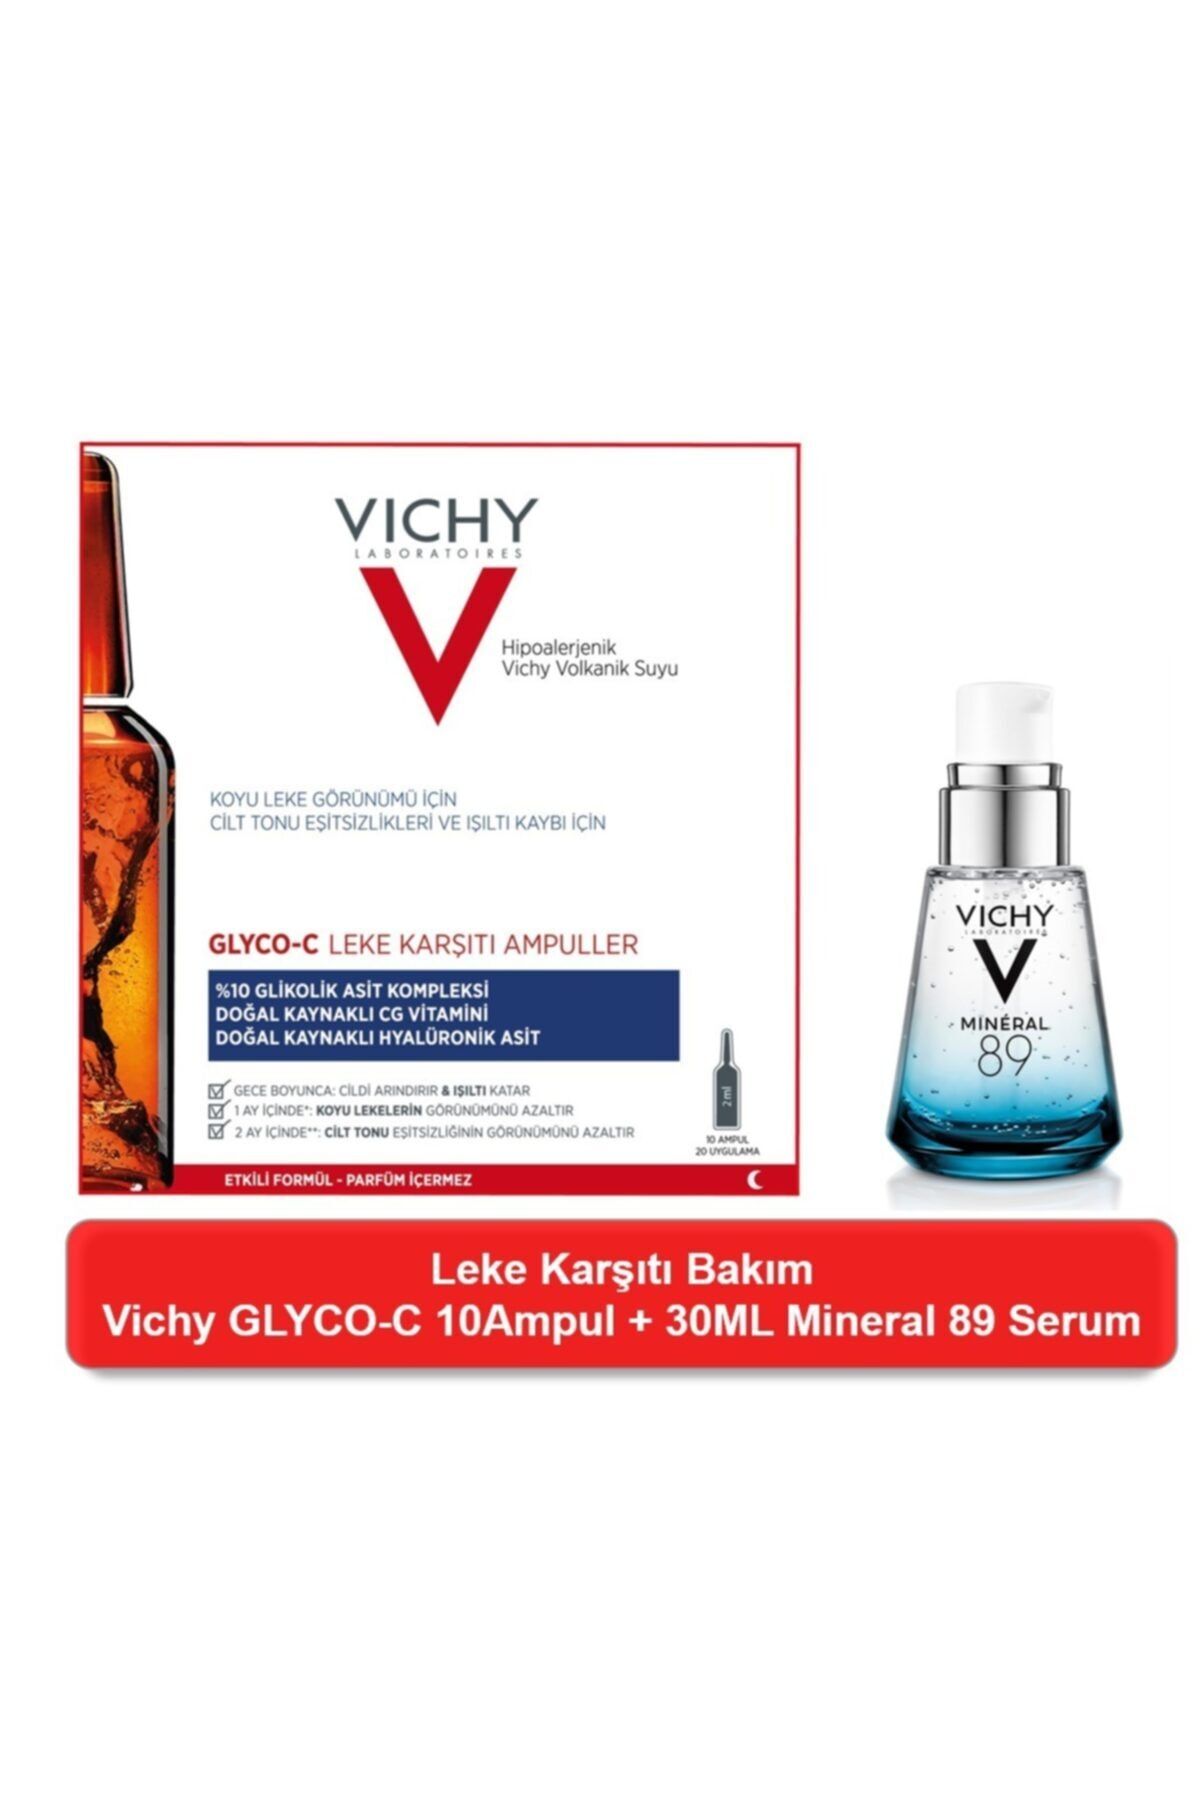 Vichy Glyco-c Leke Karşıtı 10 Ampul+ Vıchy Mıneral 89 30 ml